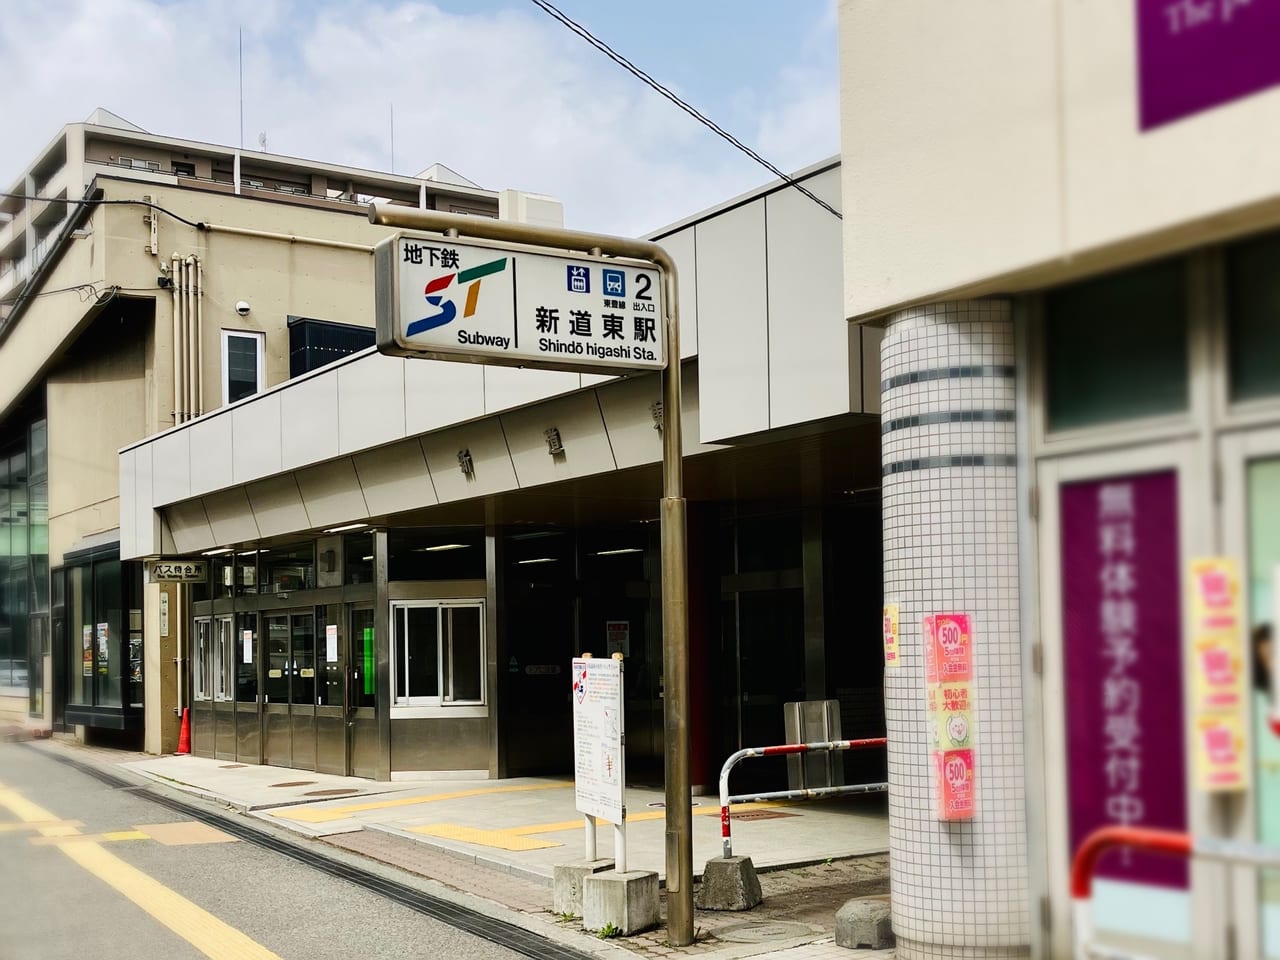 新道東駅すぐのTSUTAYA跡地に貼り紙を発見。次にオープンするお店がわかりましたよ。